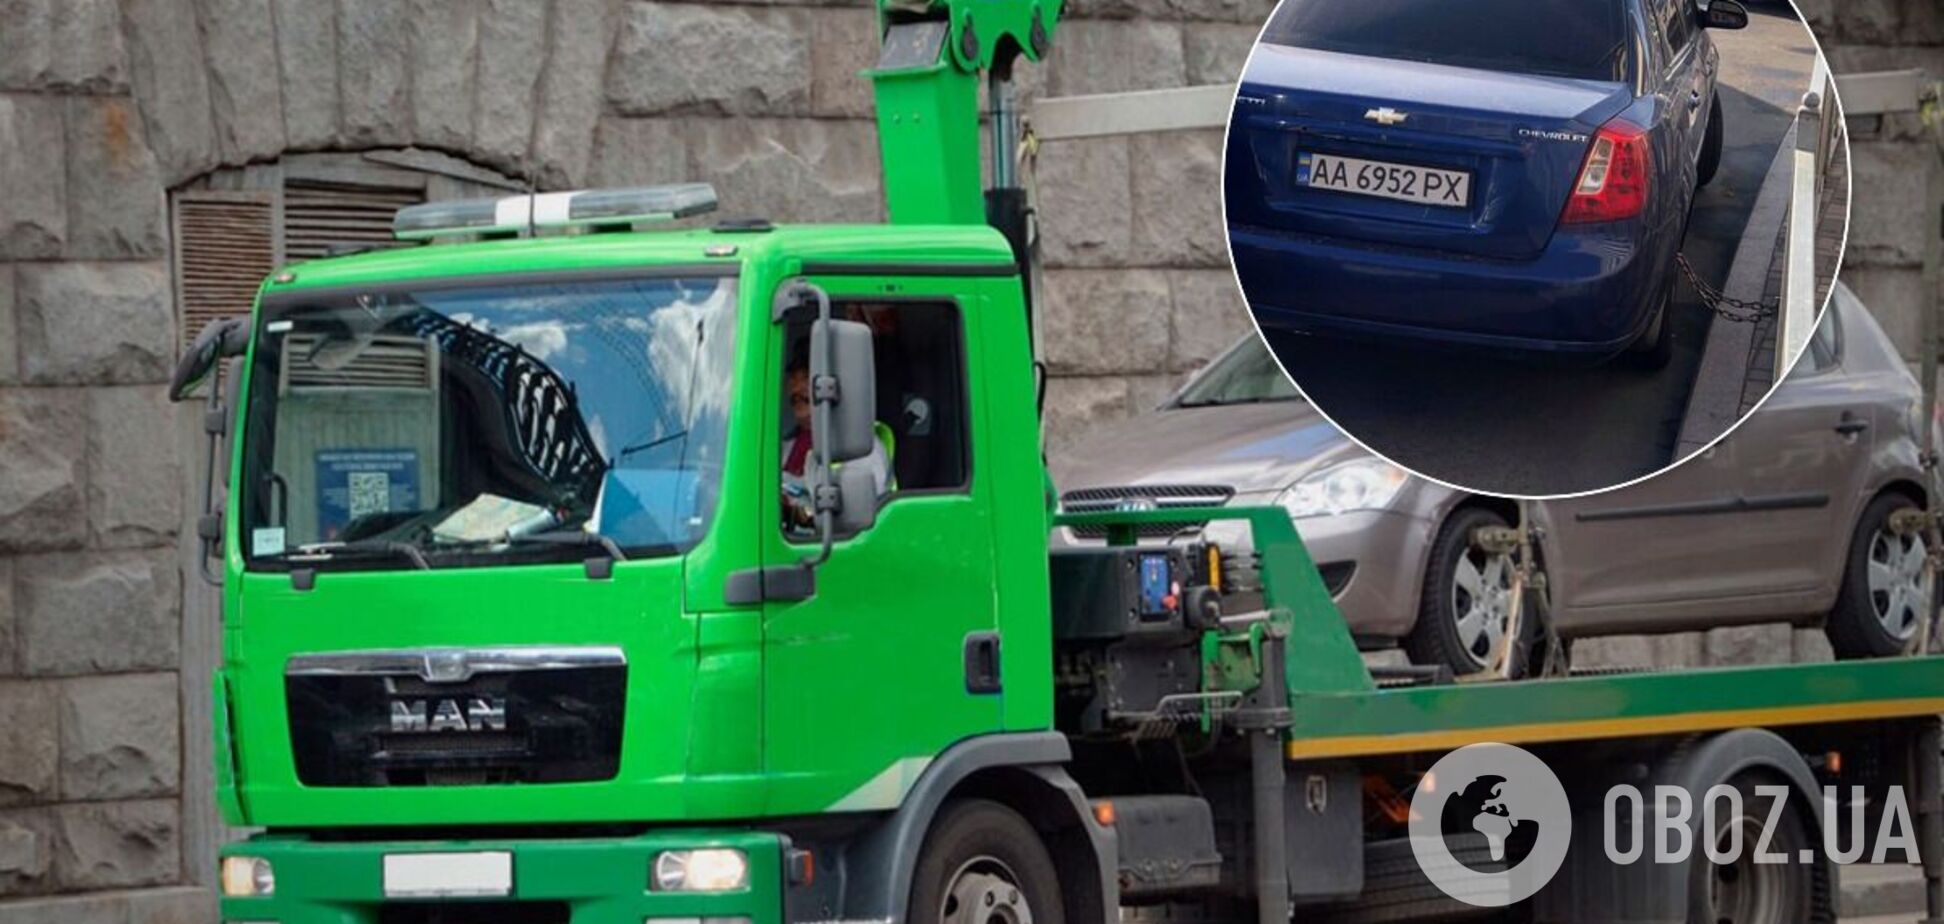 У Києві автомобіль 'посадили на ланцюг' для захисту від евакуатора